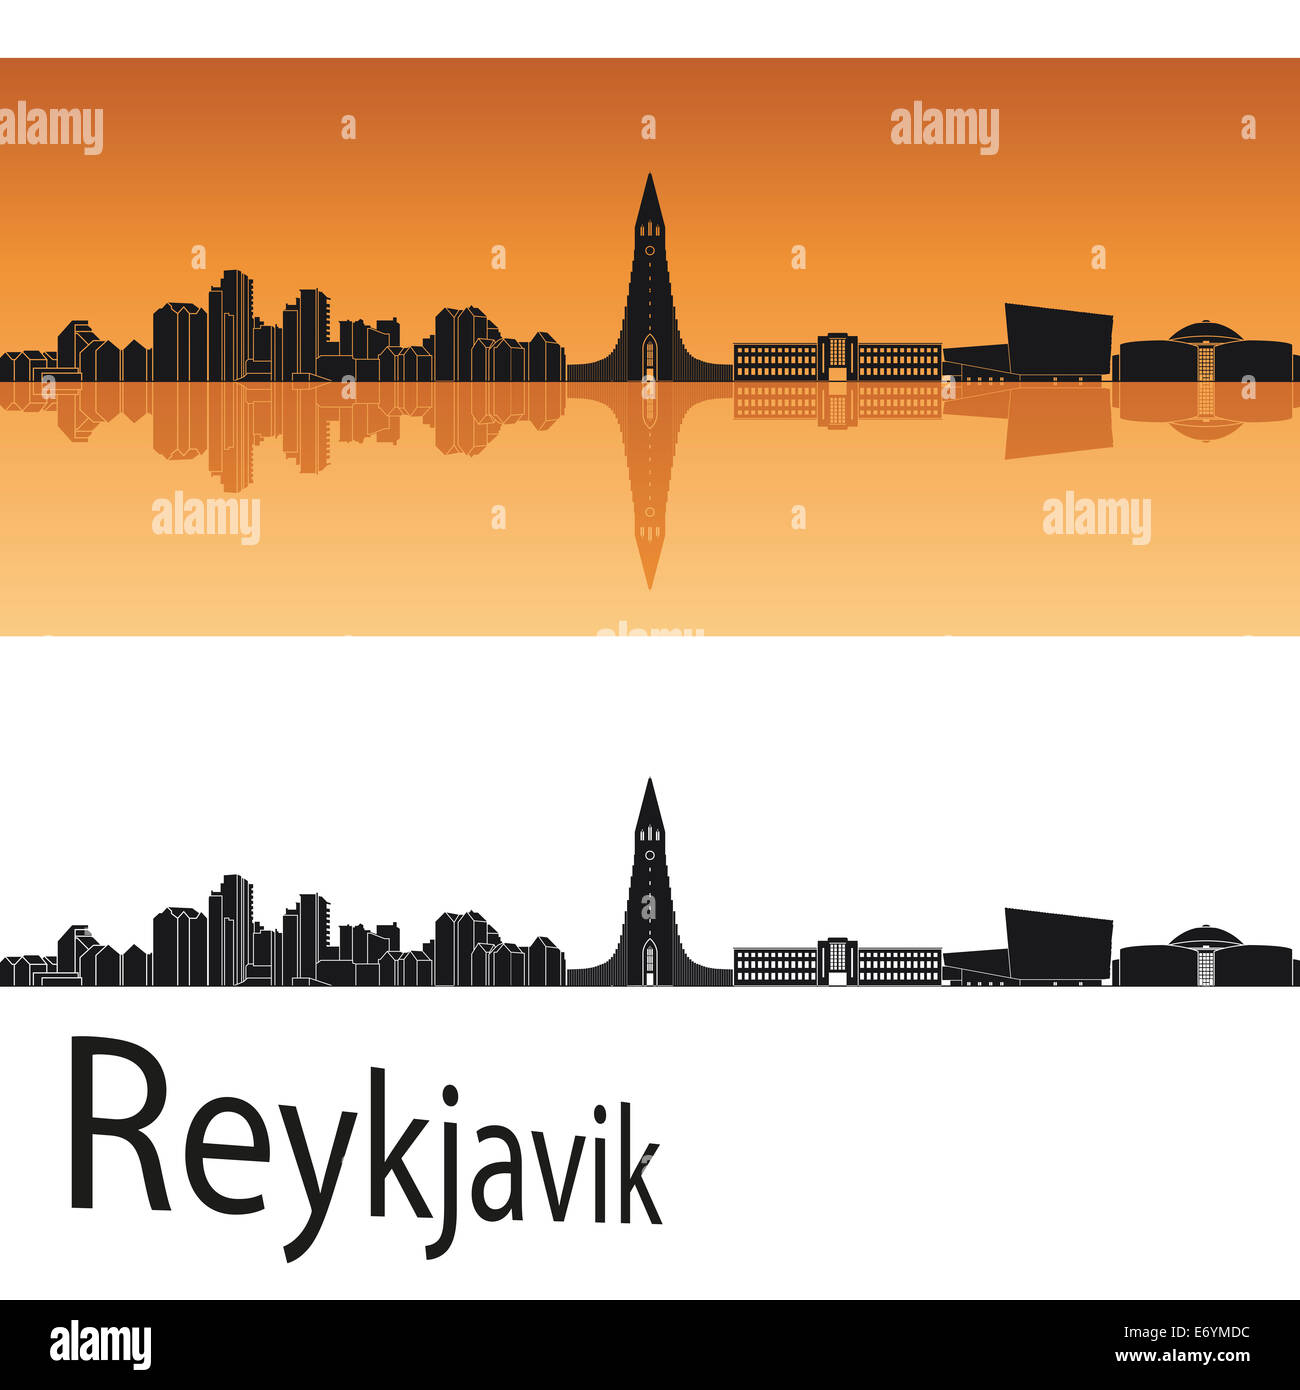 Reykjavik skyline en orange Banque D'Images